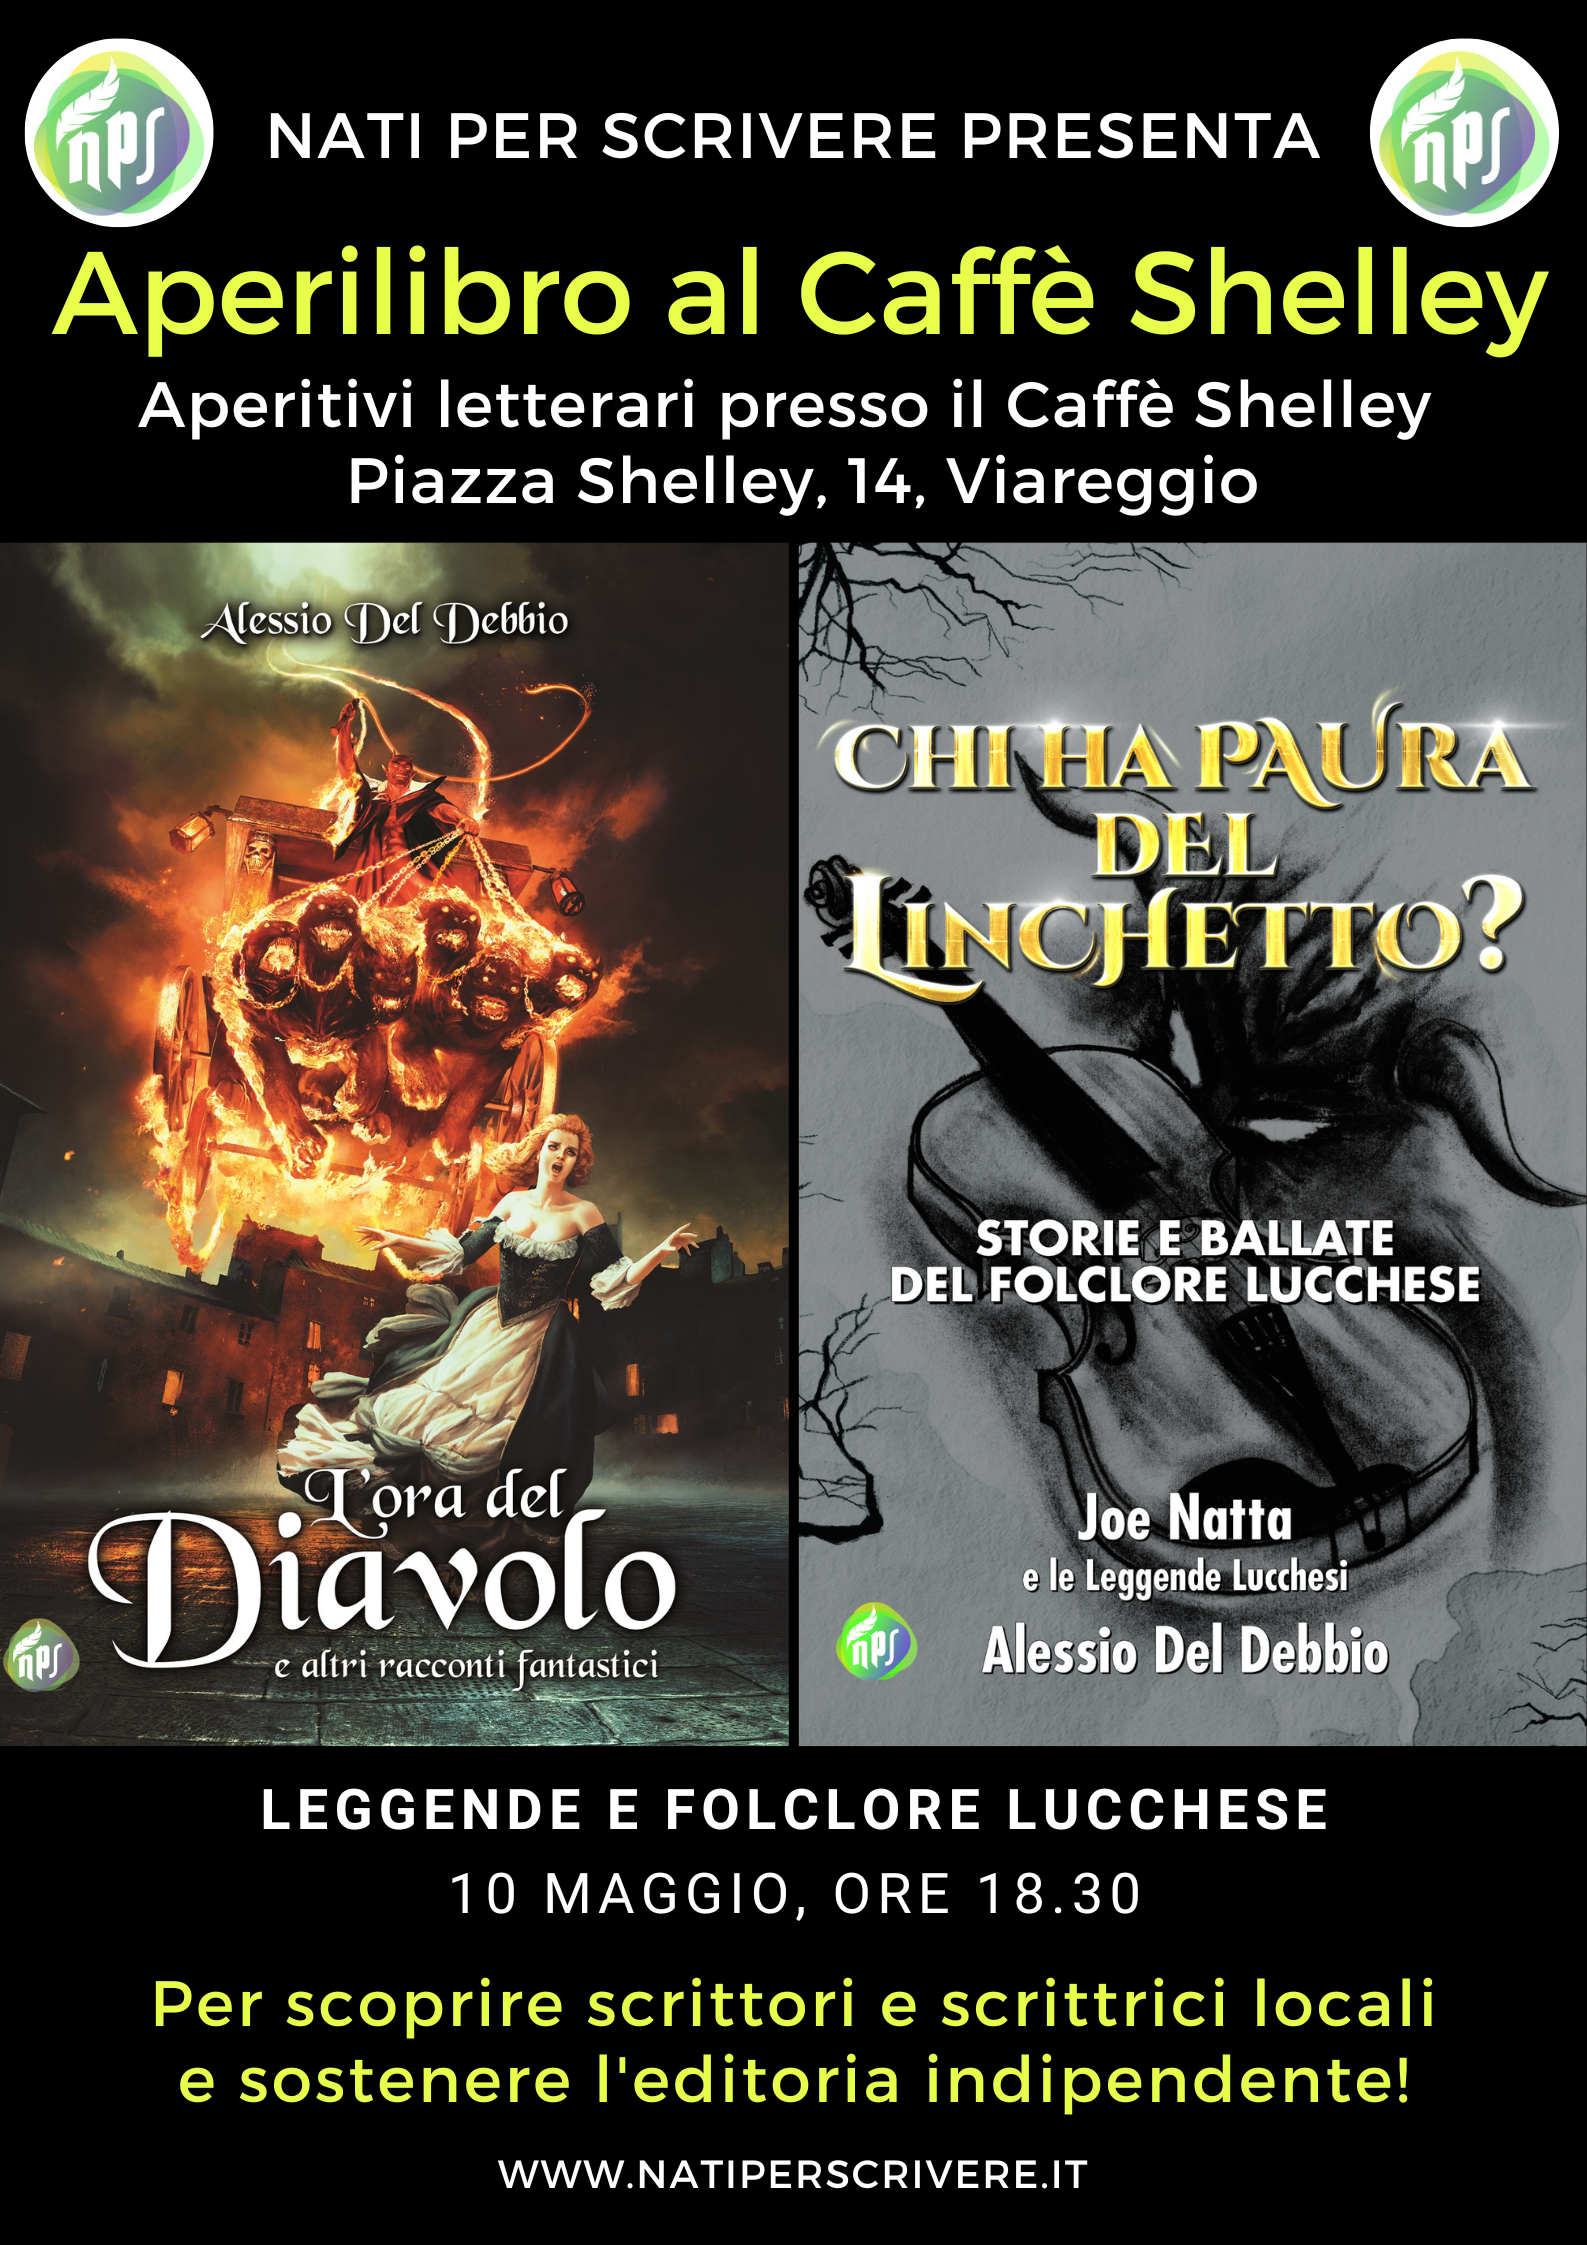 Foto 2 - Arrivano gli Aperitivi letterari al Caffè Shelley di Viareggio